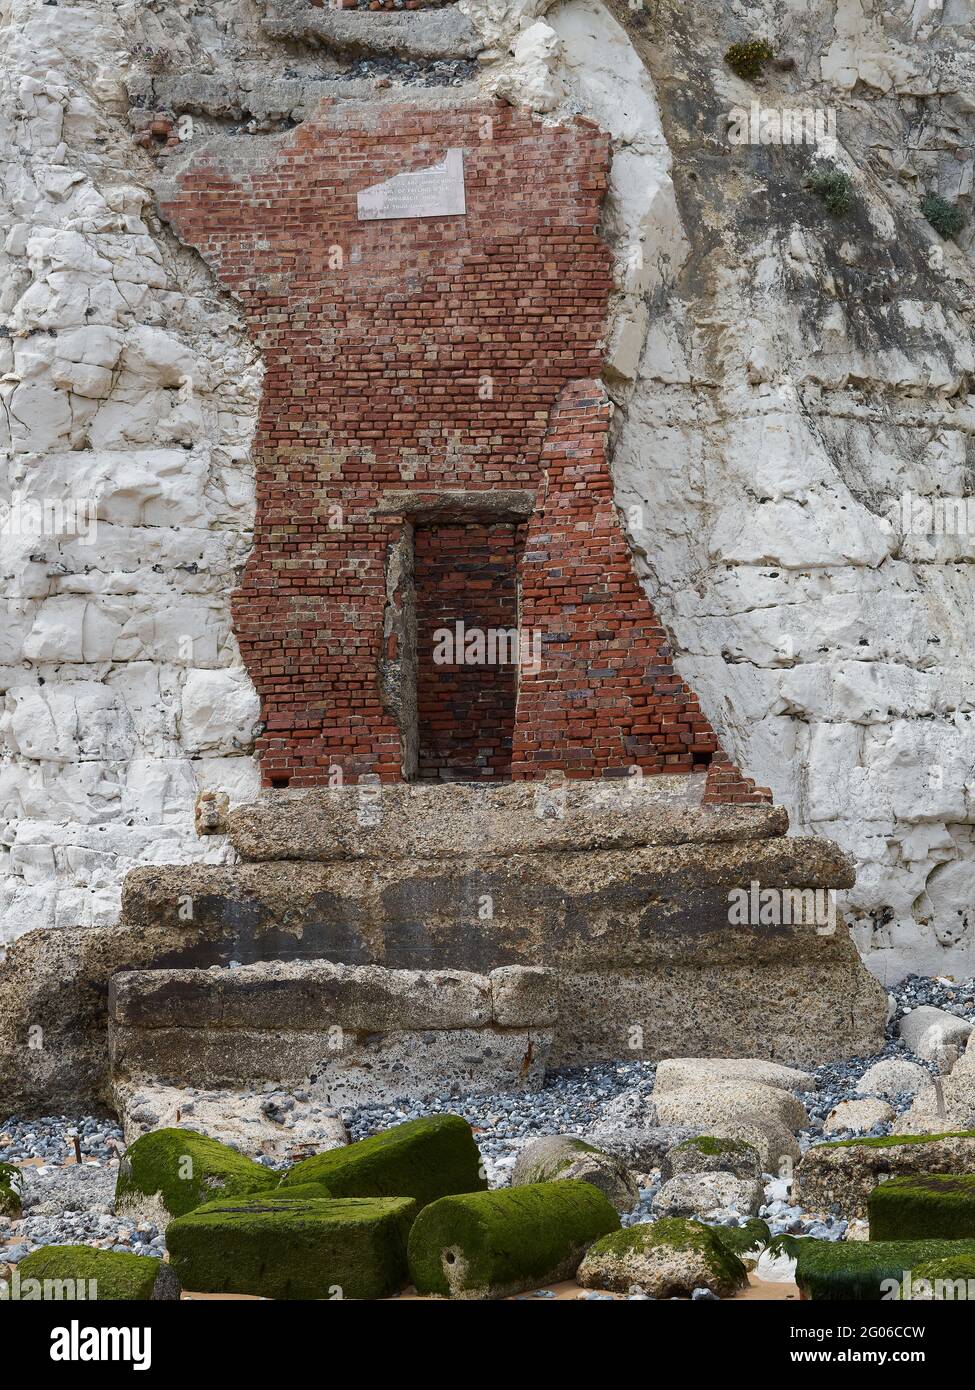 Une porte mystérieuse dans un mur de briques, greffée sur le rocher vivant de la falaise de craie à Stone Bay, avec des gravats et un escalier en dessous. Pourquoi?! Banque D'Images